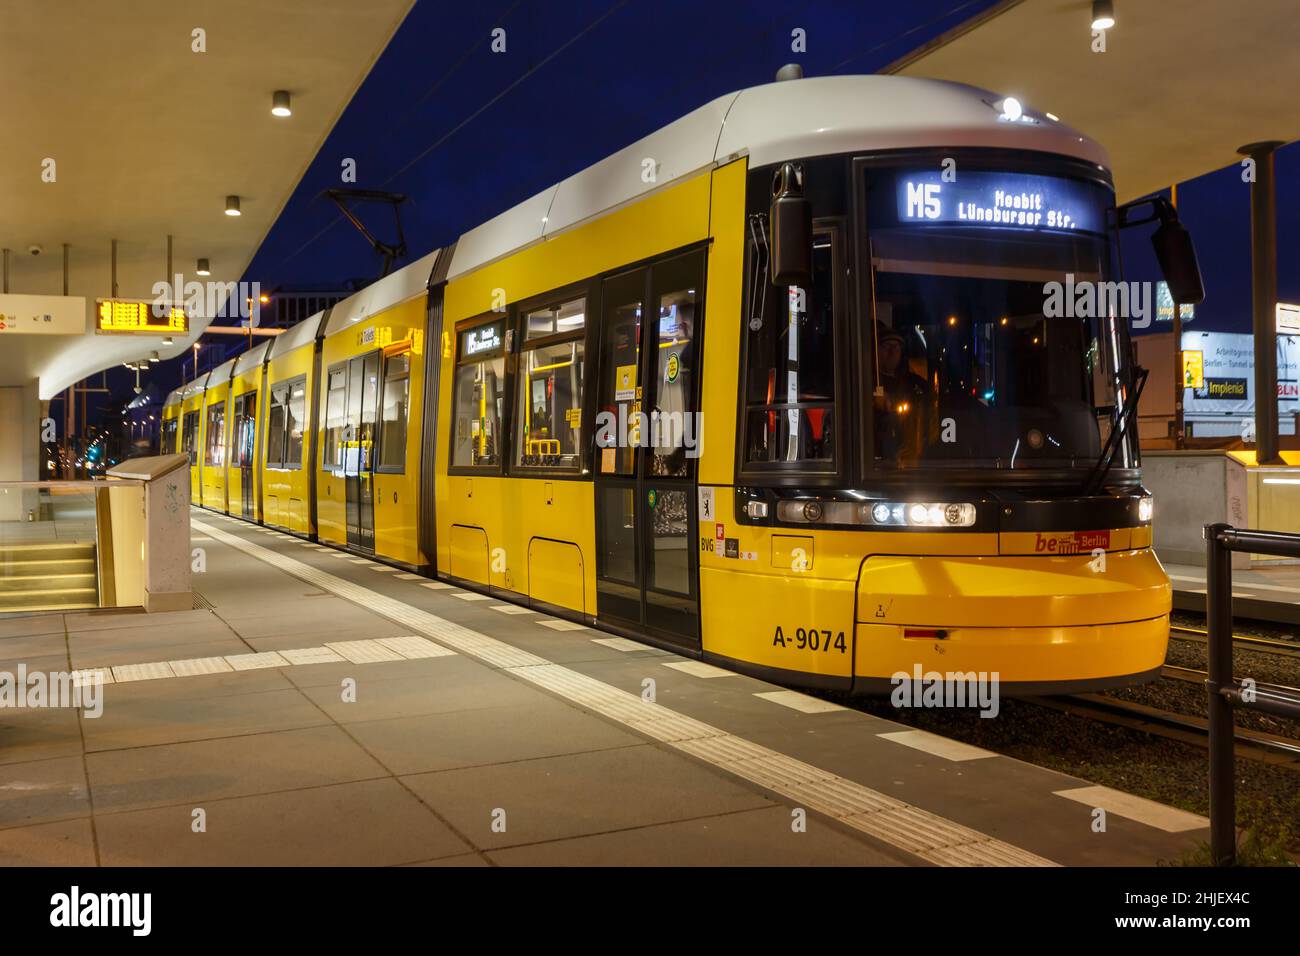 Berlin, Germany - April 22, 2021: Tram Bombardier Flexity light rail public transport Hauptbahnhof main station in Berlin, Germany. Stock Photo